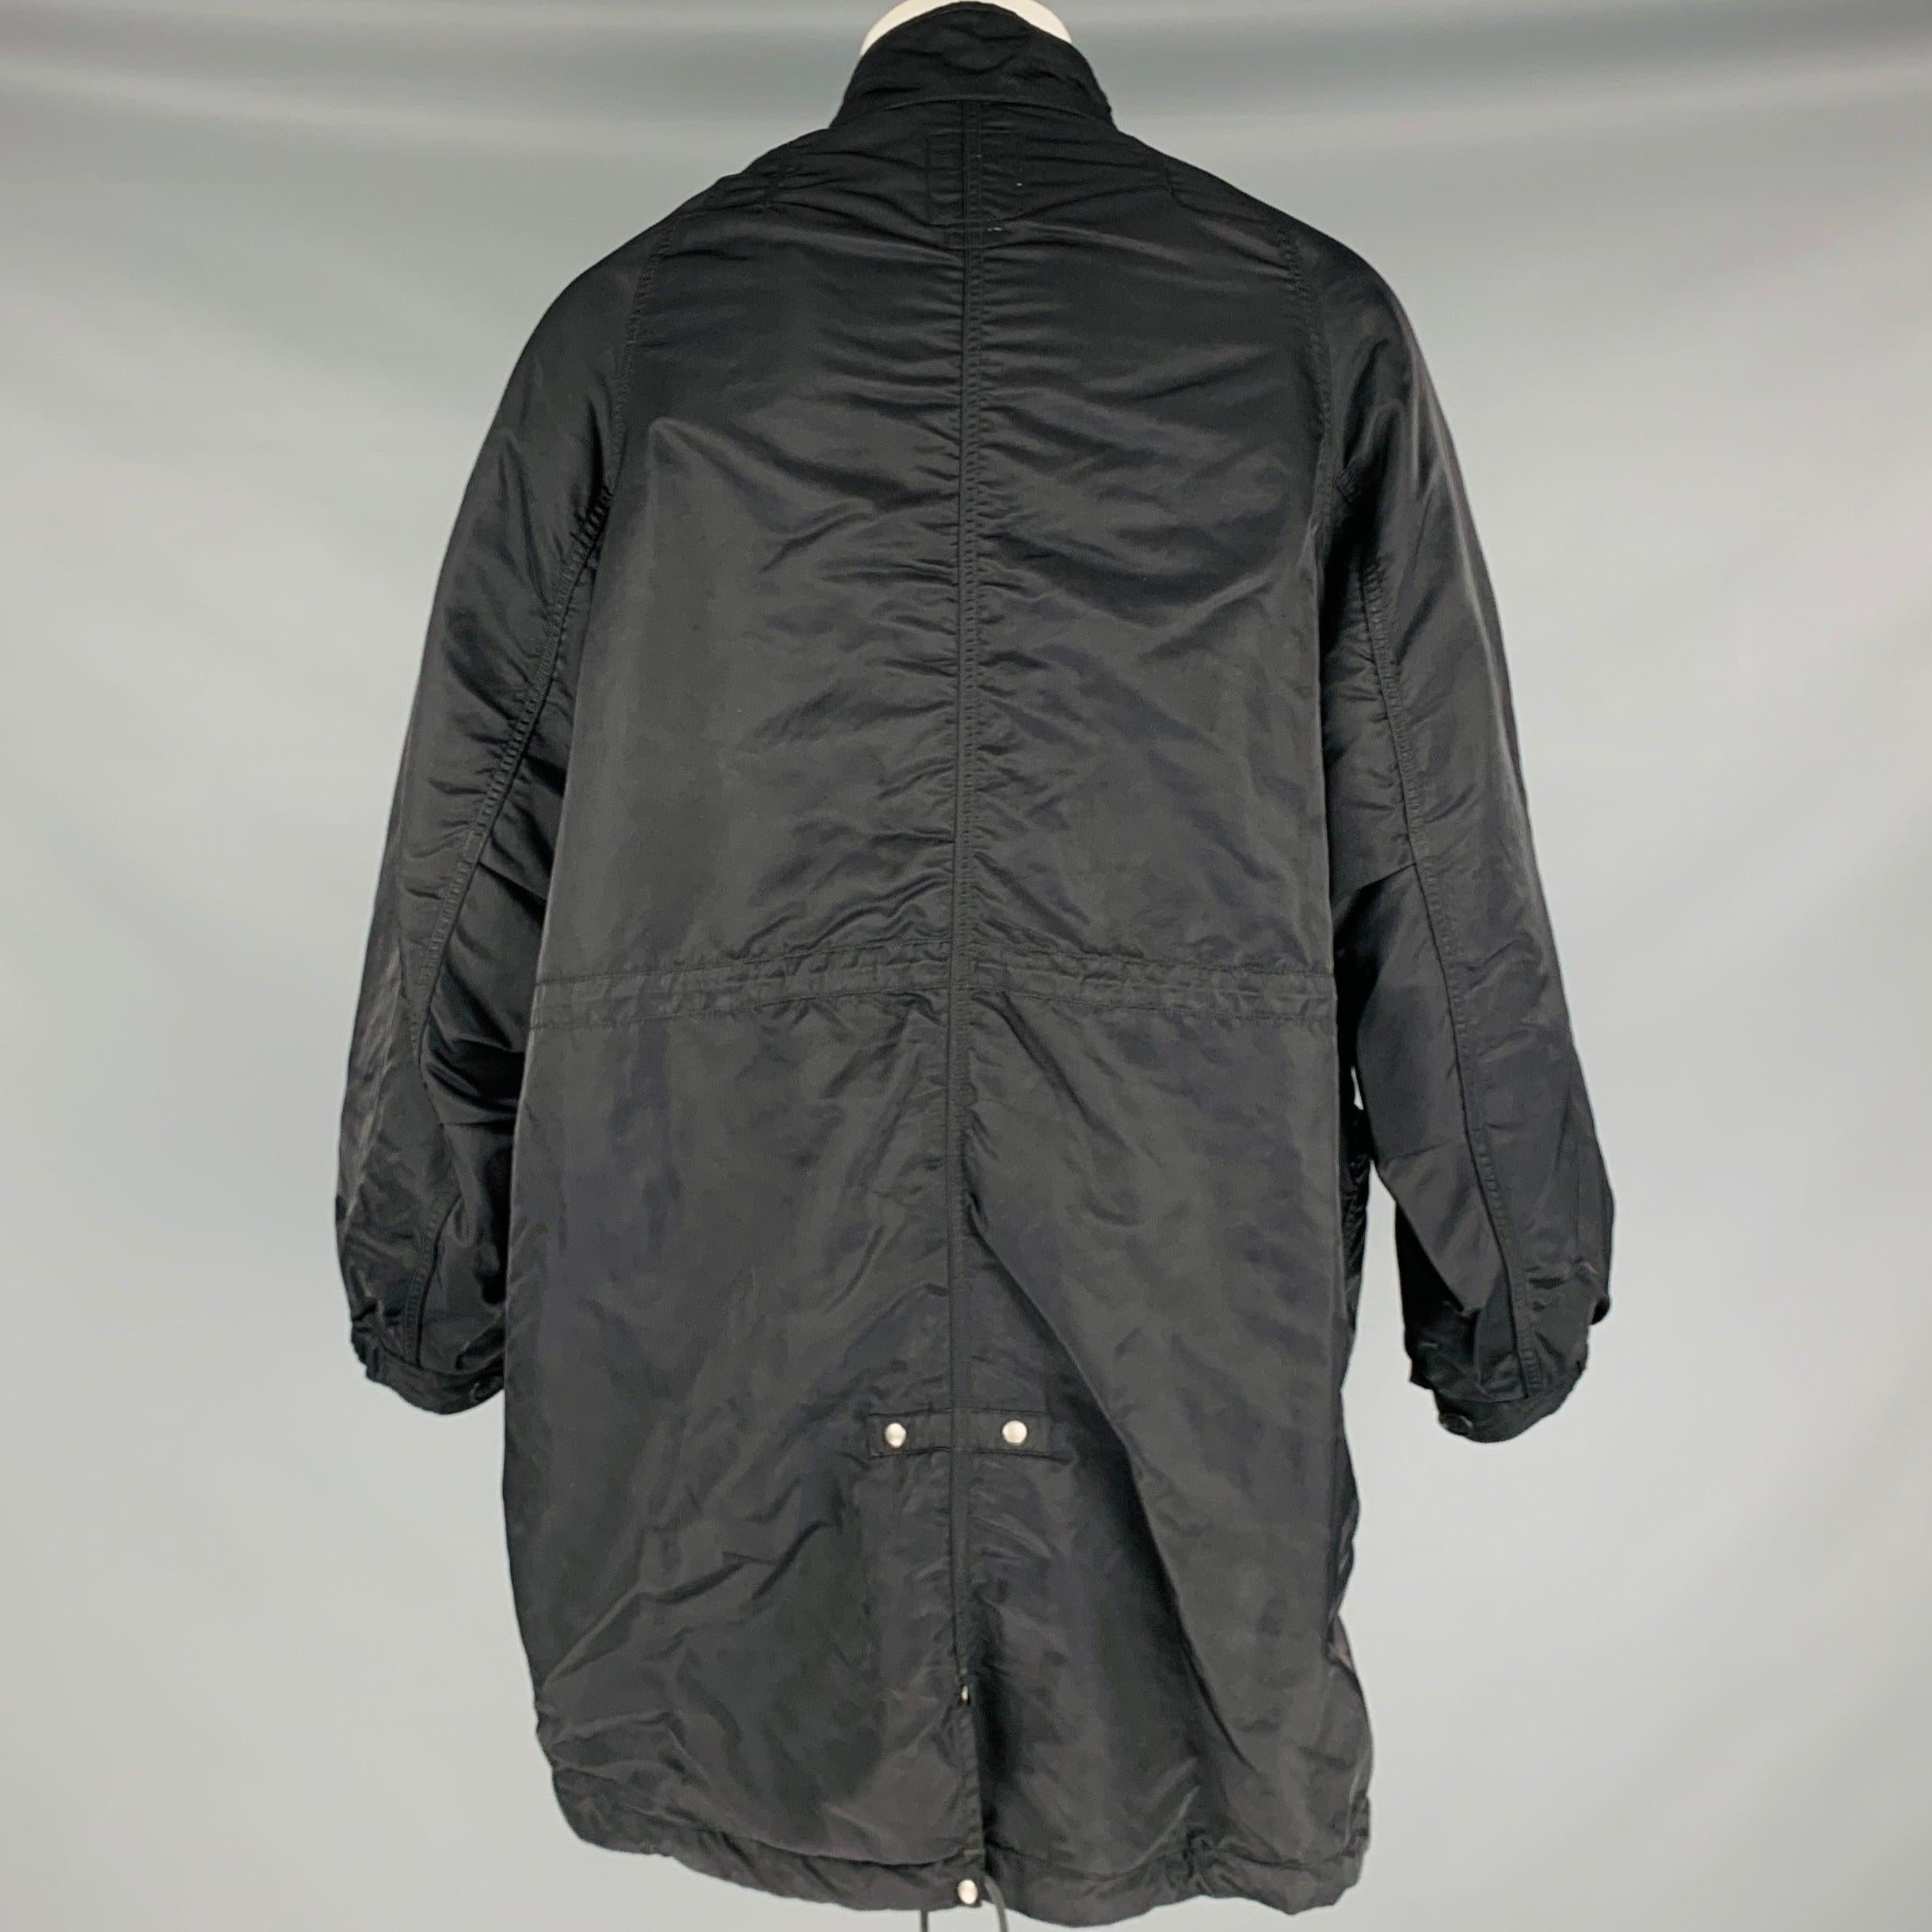 VISVIM -Six Five Fishtail Parka- Size S Black Nylon Parka Coat Pour hommes en vente